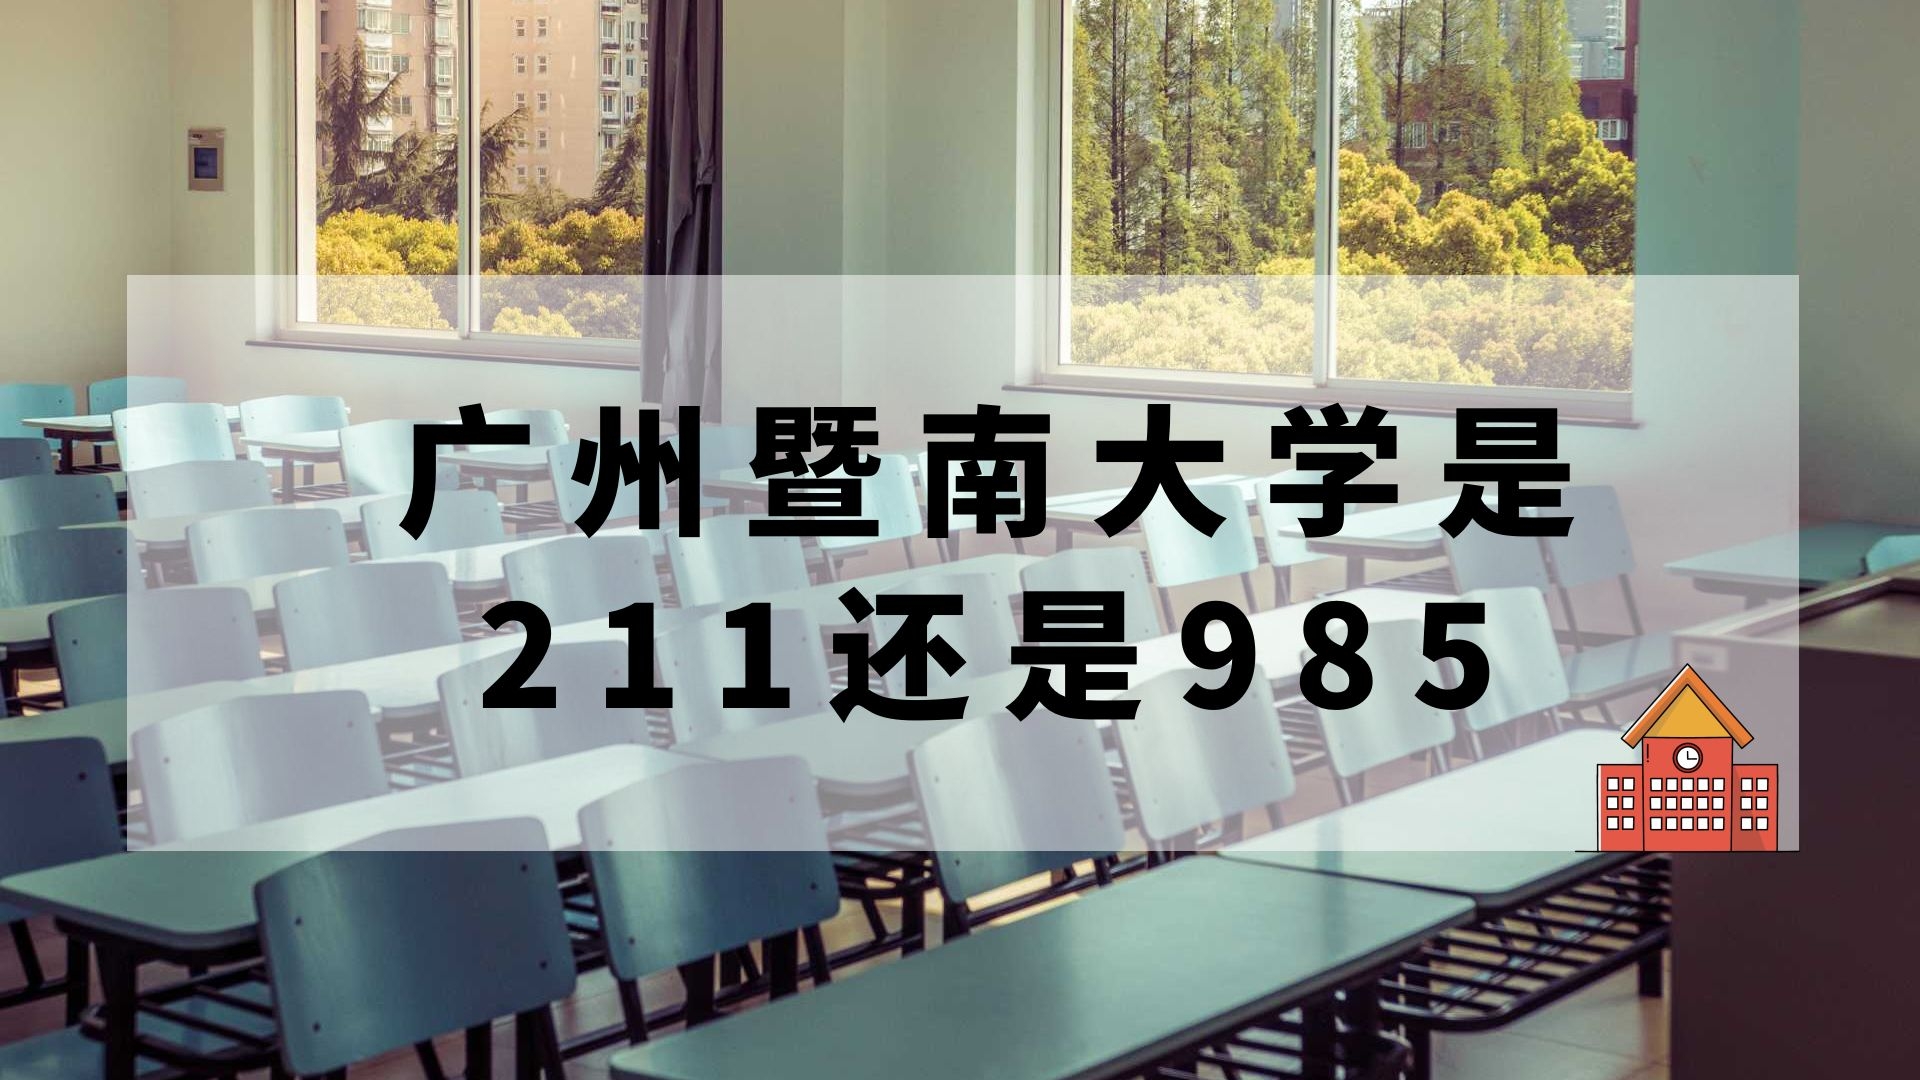 广州暨南大学是211还是985